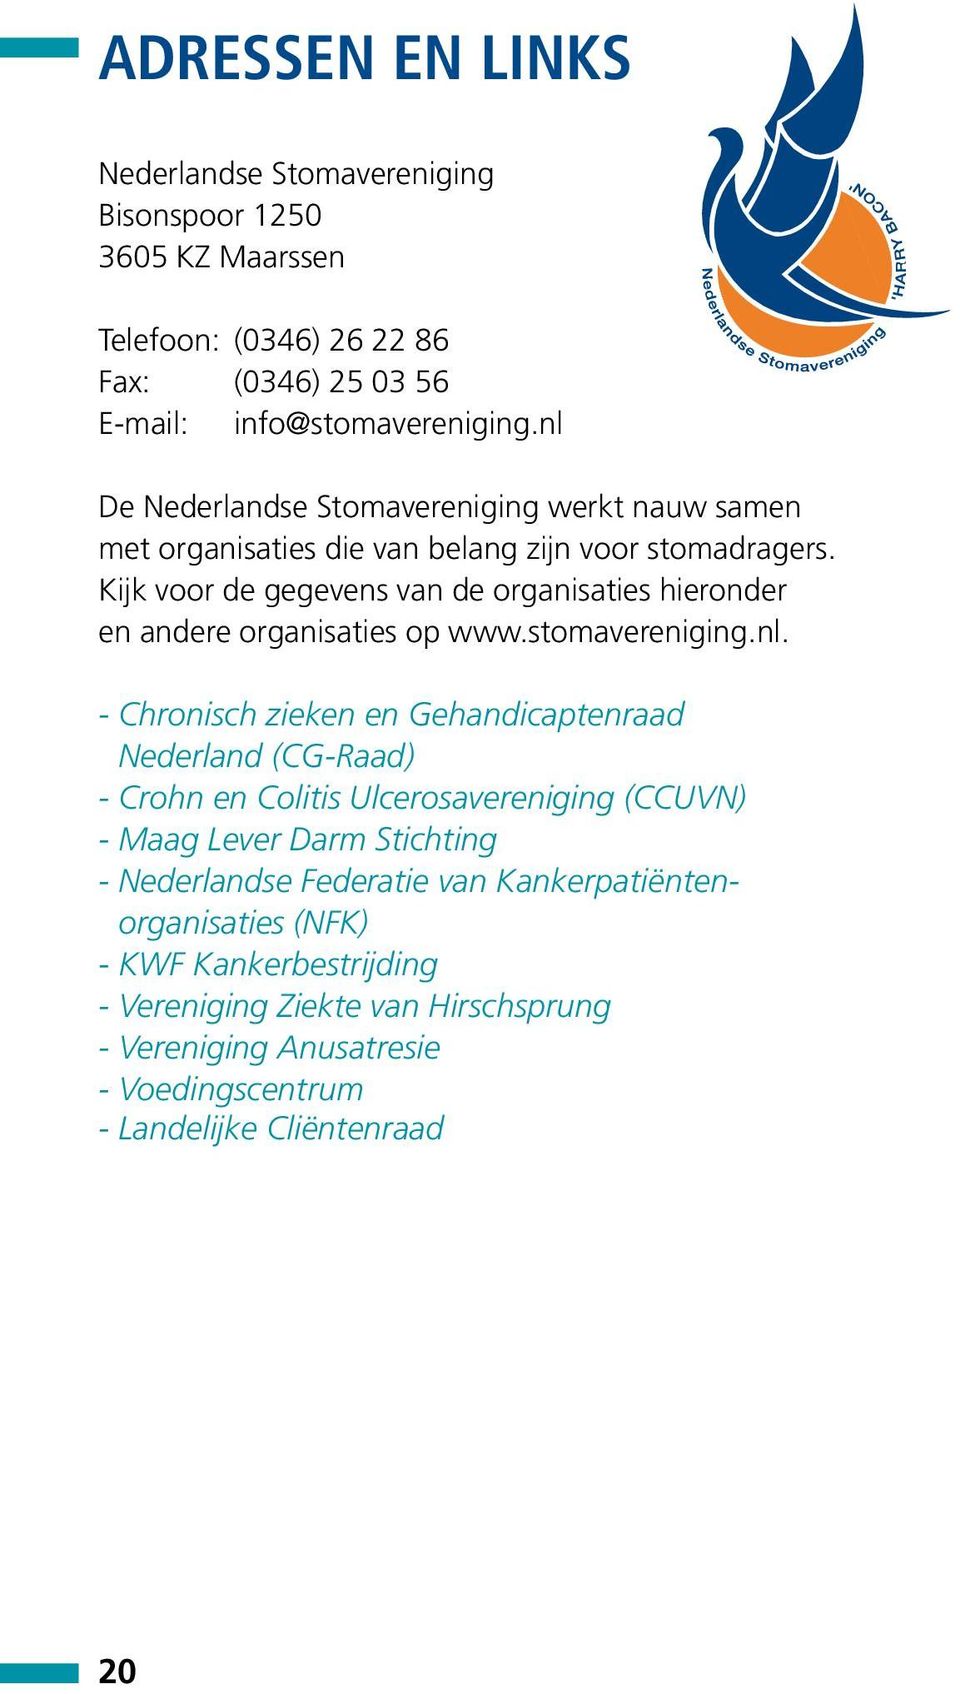 Kijk voor de gegevens van de organisaties hieronder en andere organisaties op www.stomavereniging.nl.